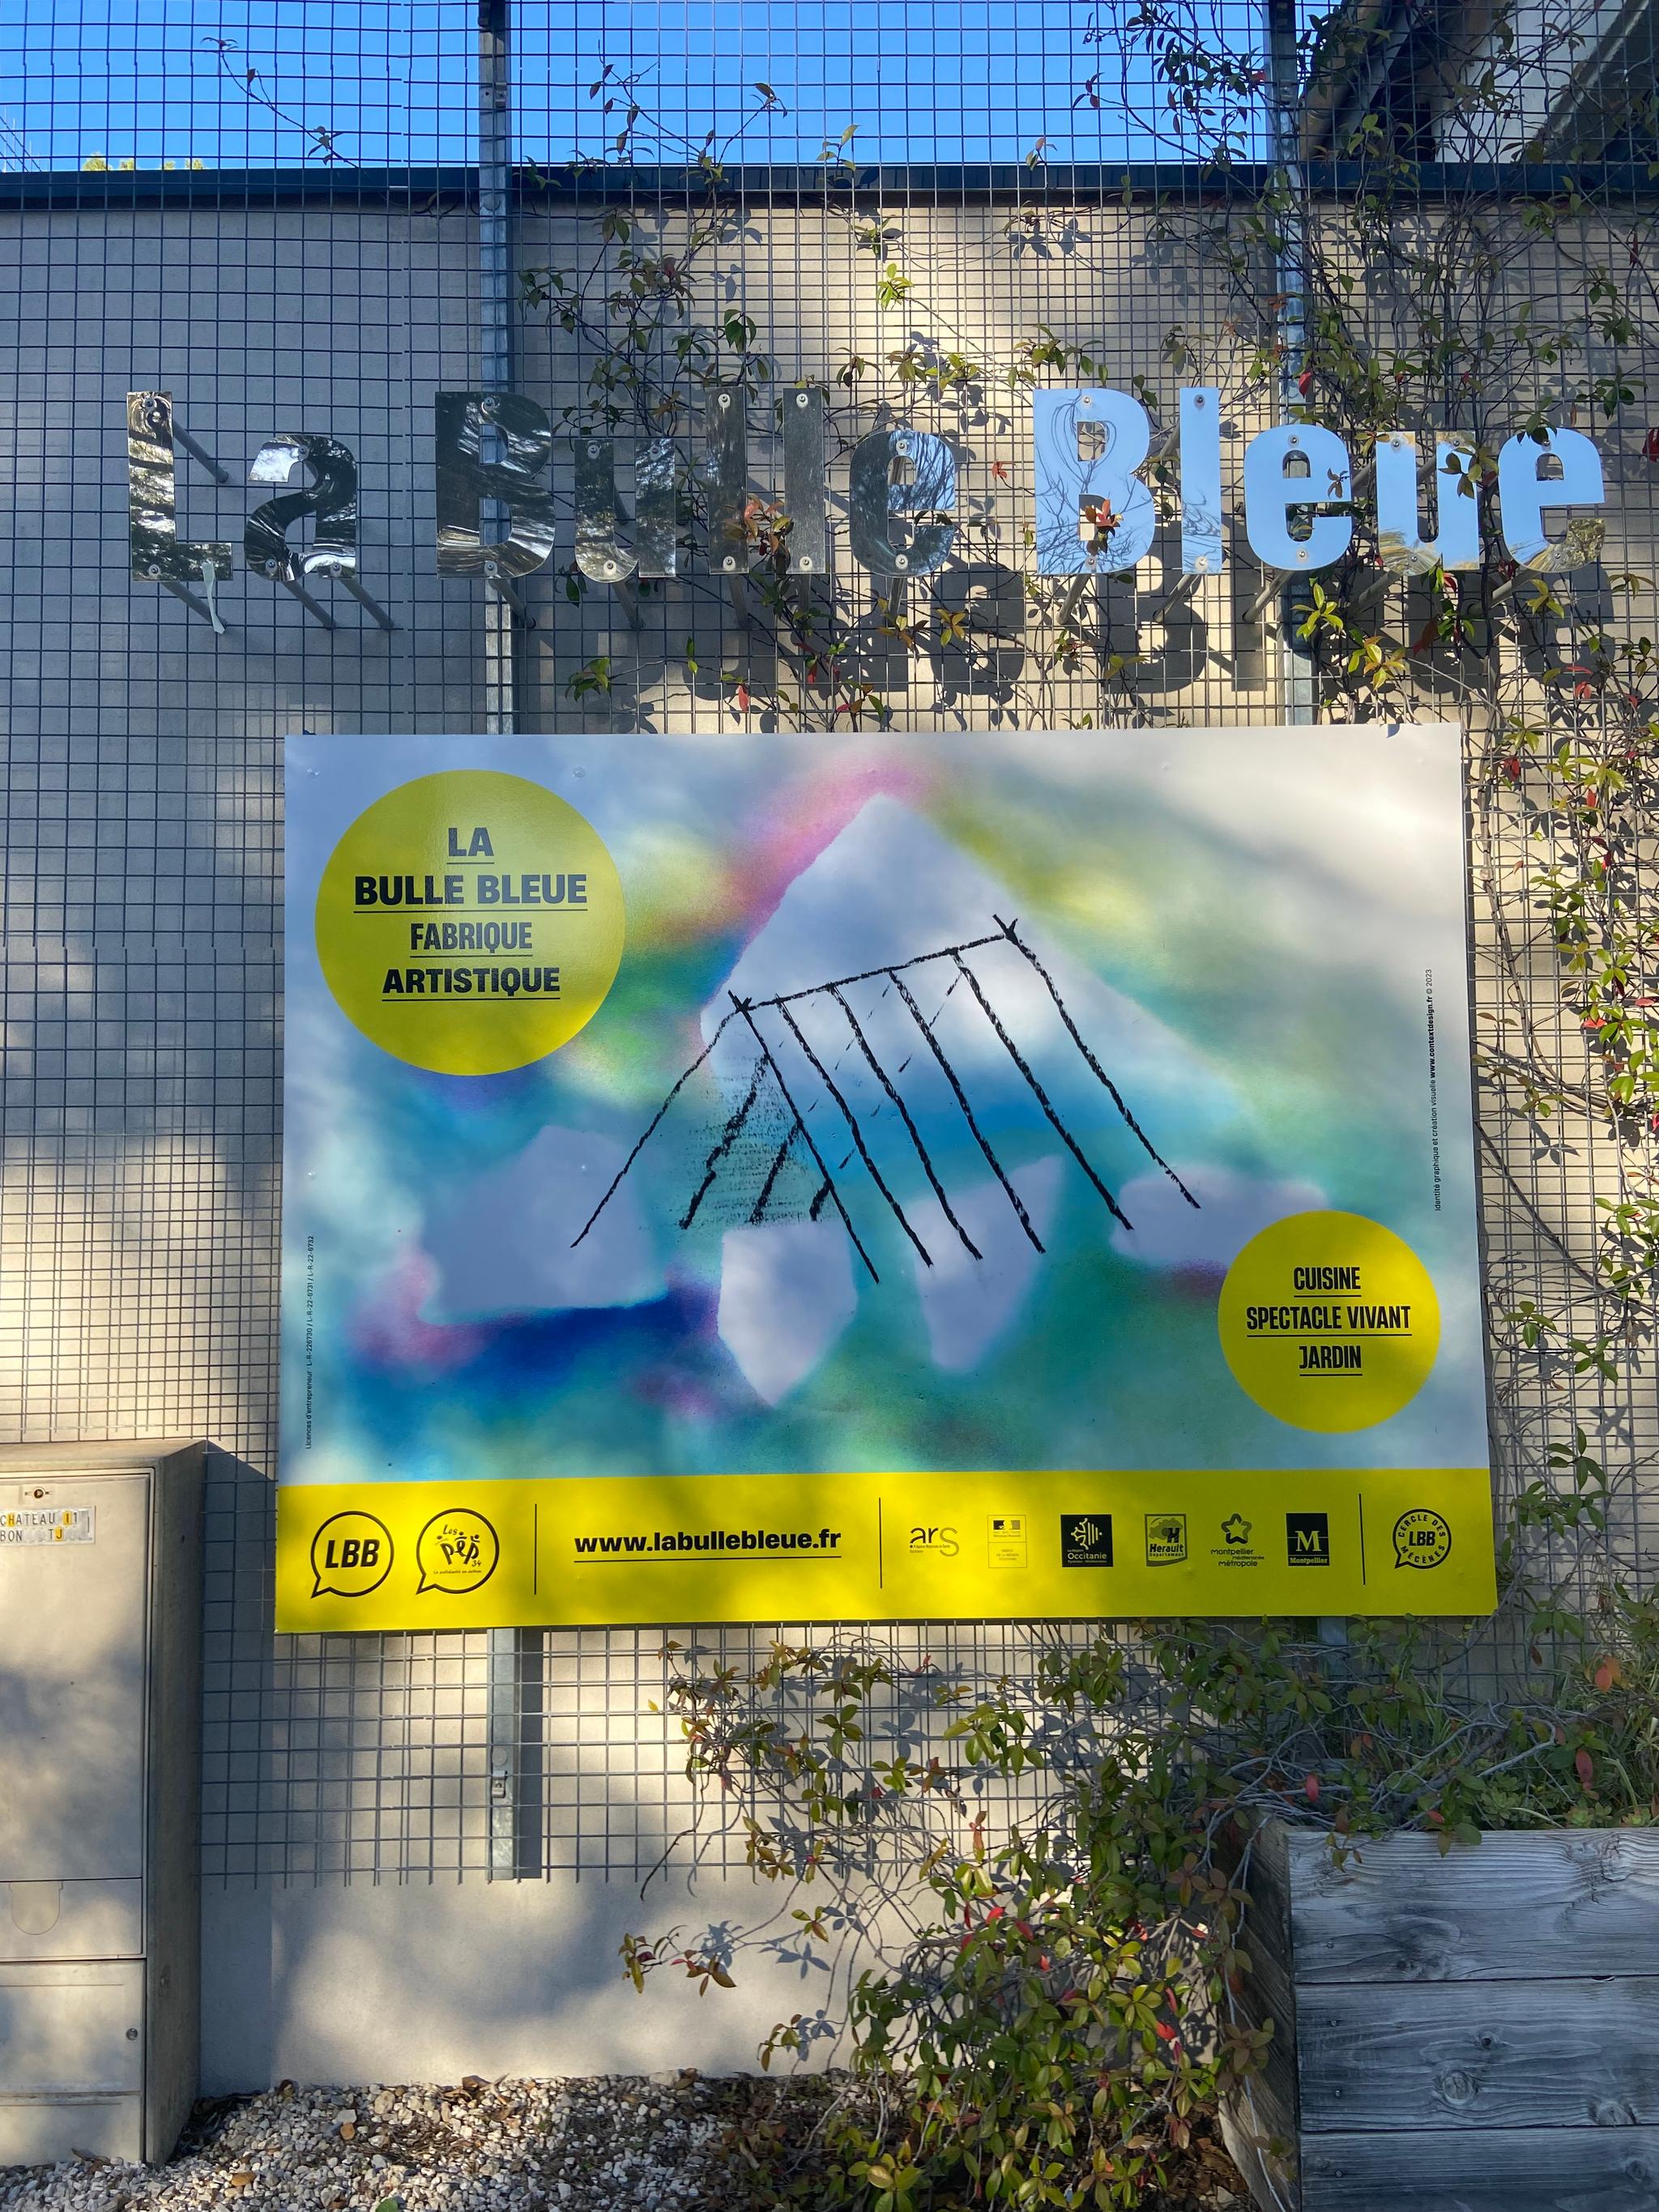 La Bulle Bleue - Fabrique artistique, Montpellier